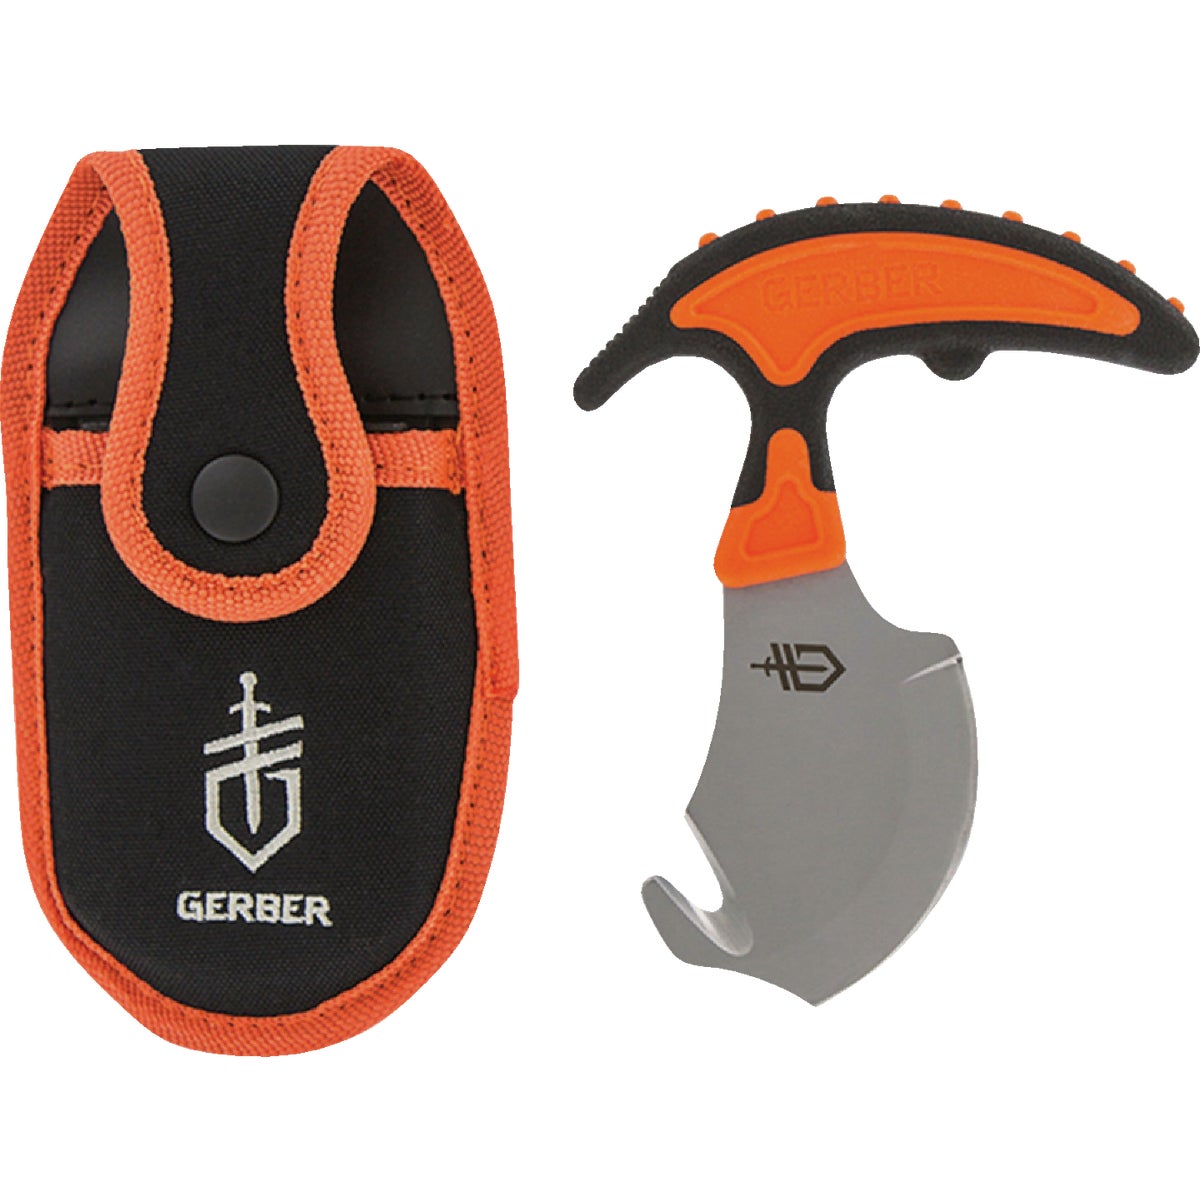 Gerber Vital 5.5 In. Orange Skin & Gut Knife